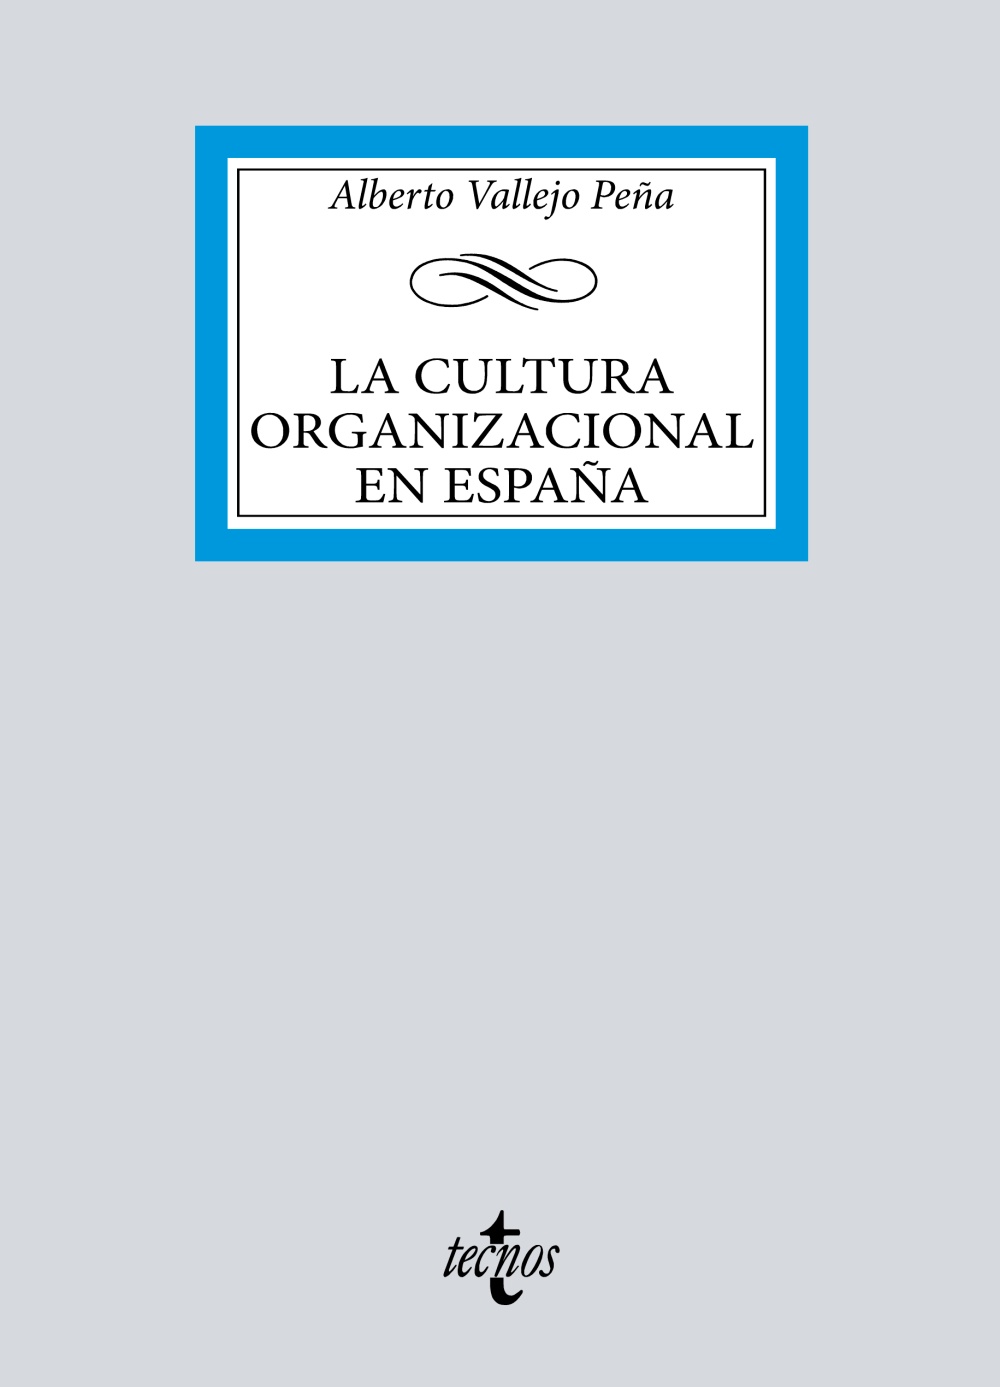 La cultura organizacional en España